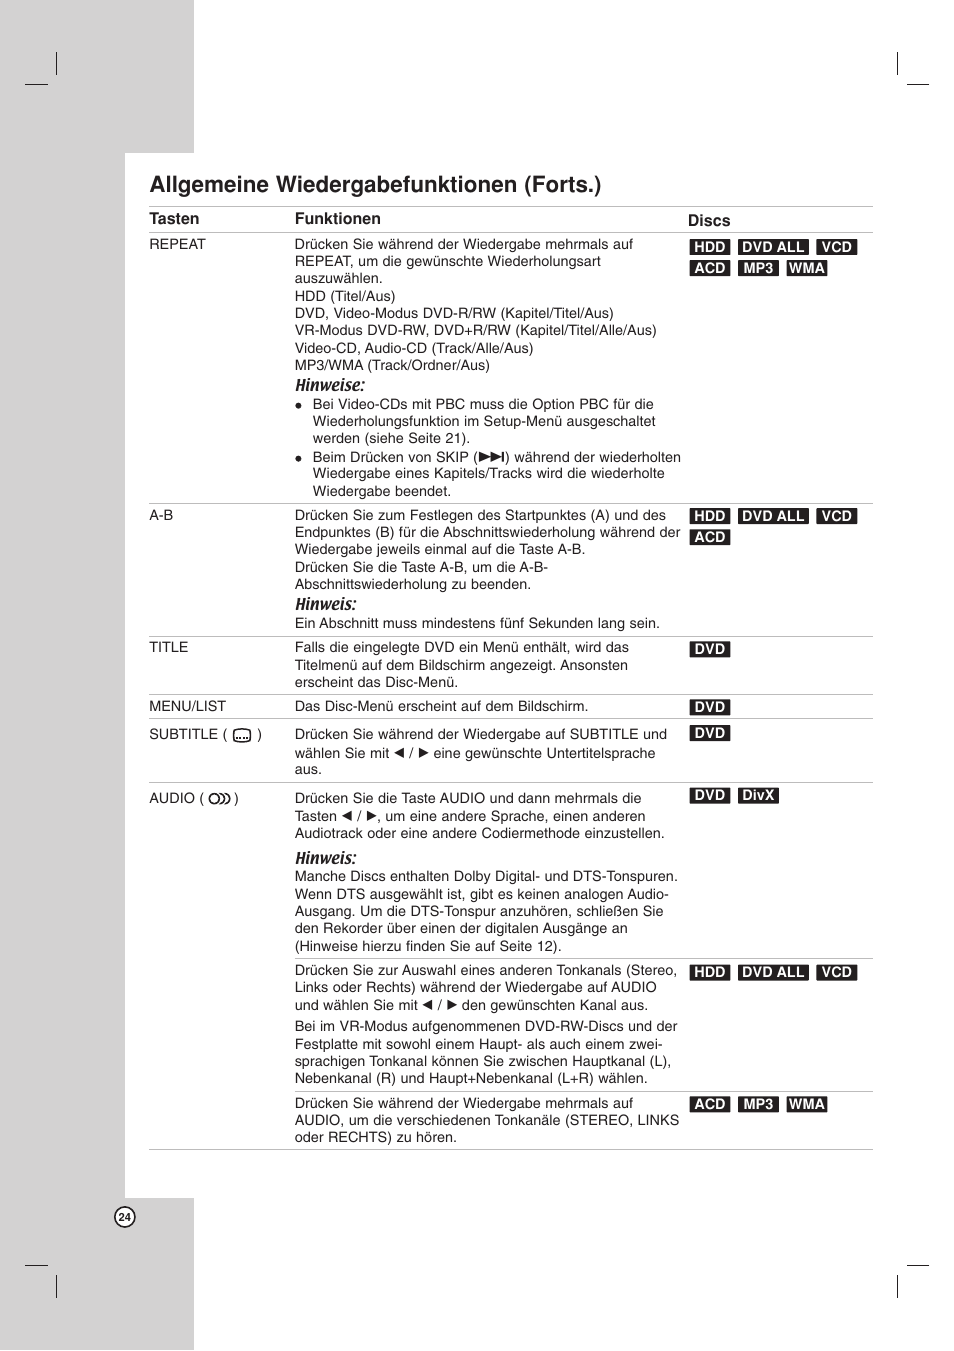 Allgemeine wiedergabefunktionen (forts.) | LG RH256 Benutzerhandbuch | Seite 24 / 58